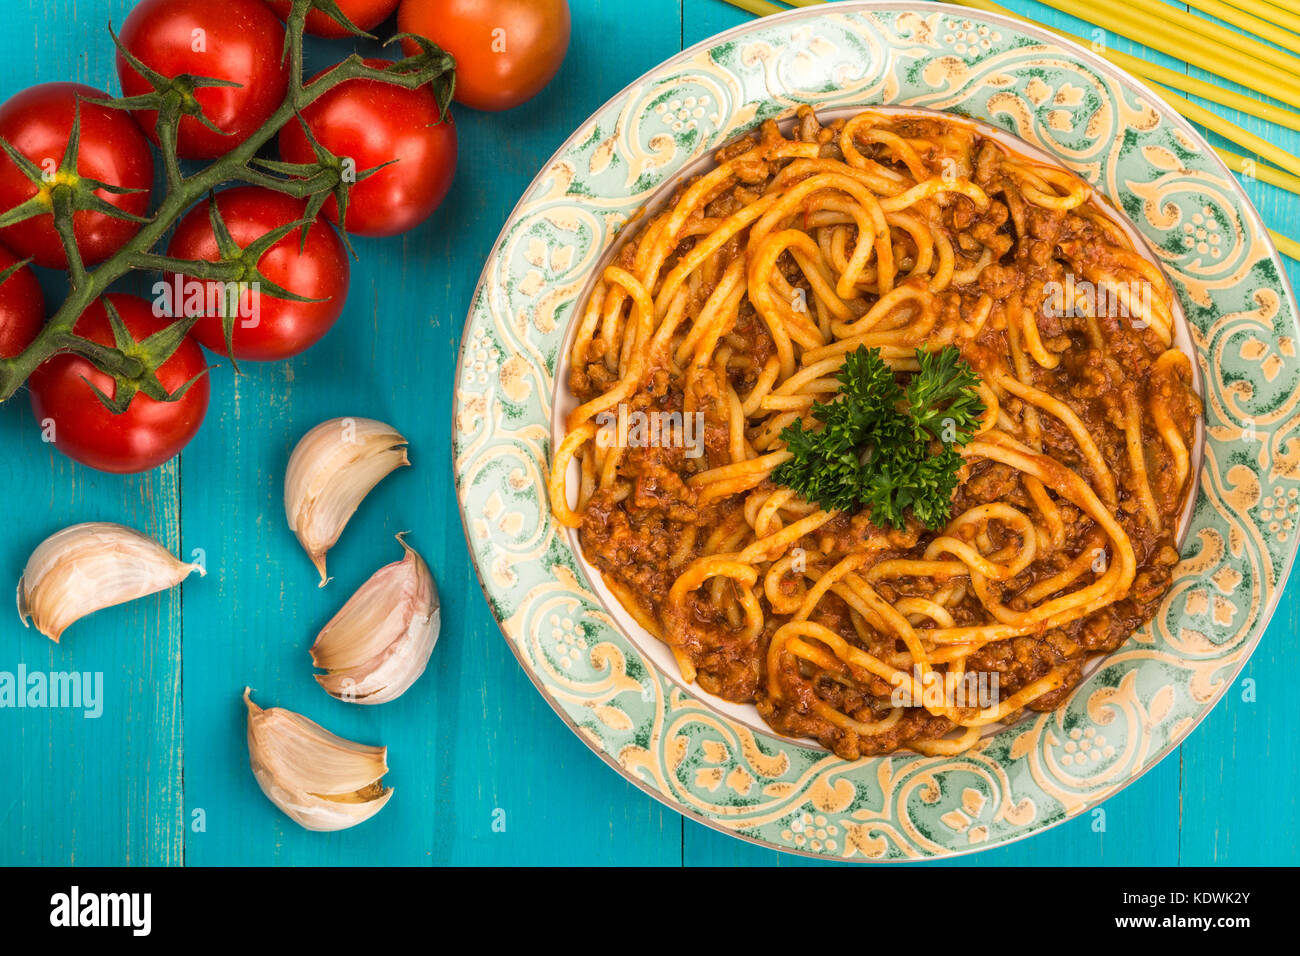 Stile italiano spaghetti alla bolognese pasto con una ricca salsa di carne su un blu sullo sfondo di legno Foto Stock